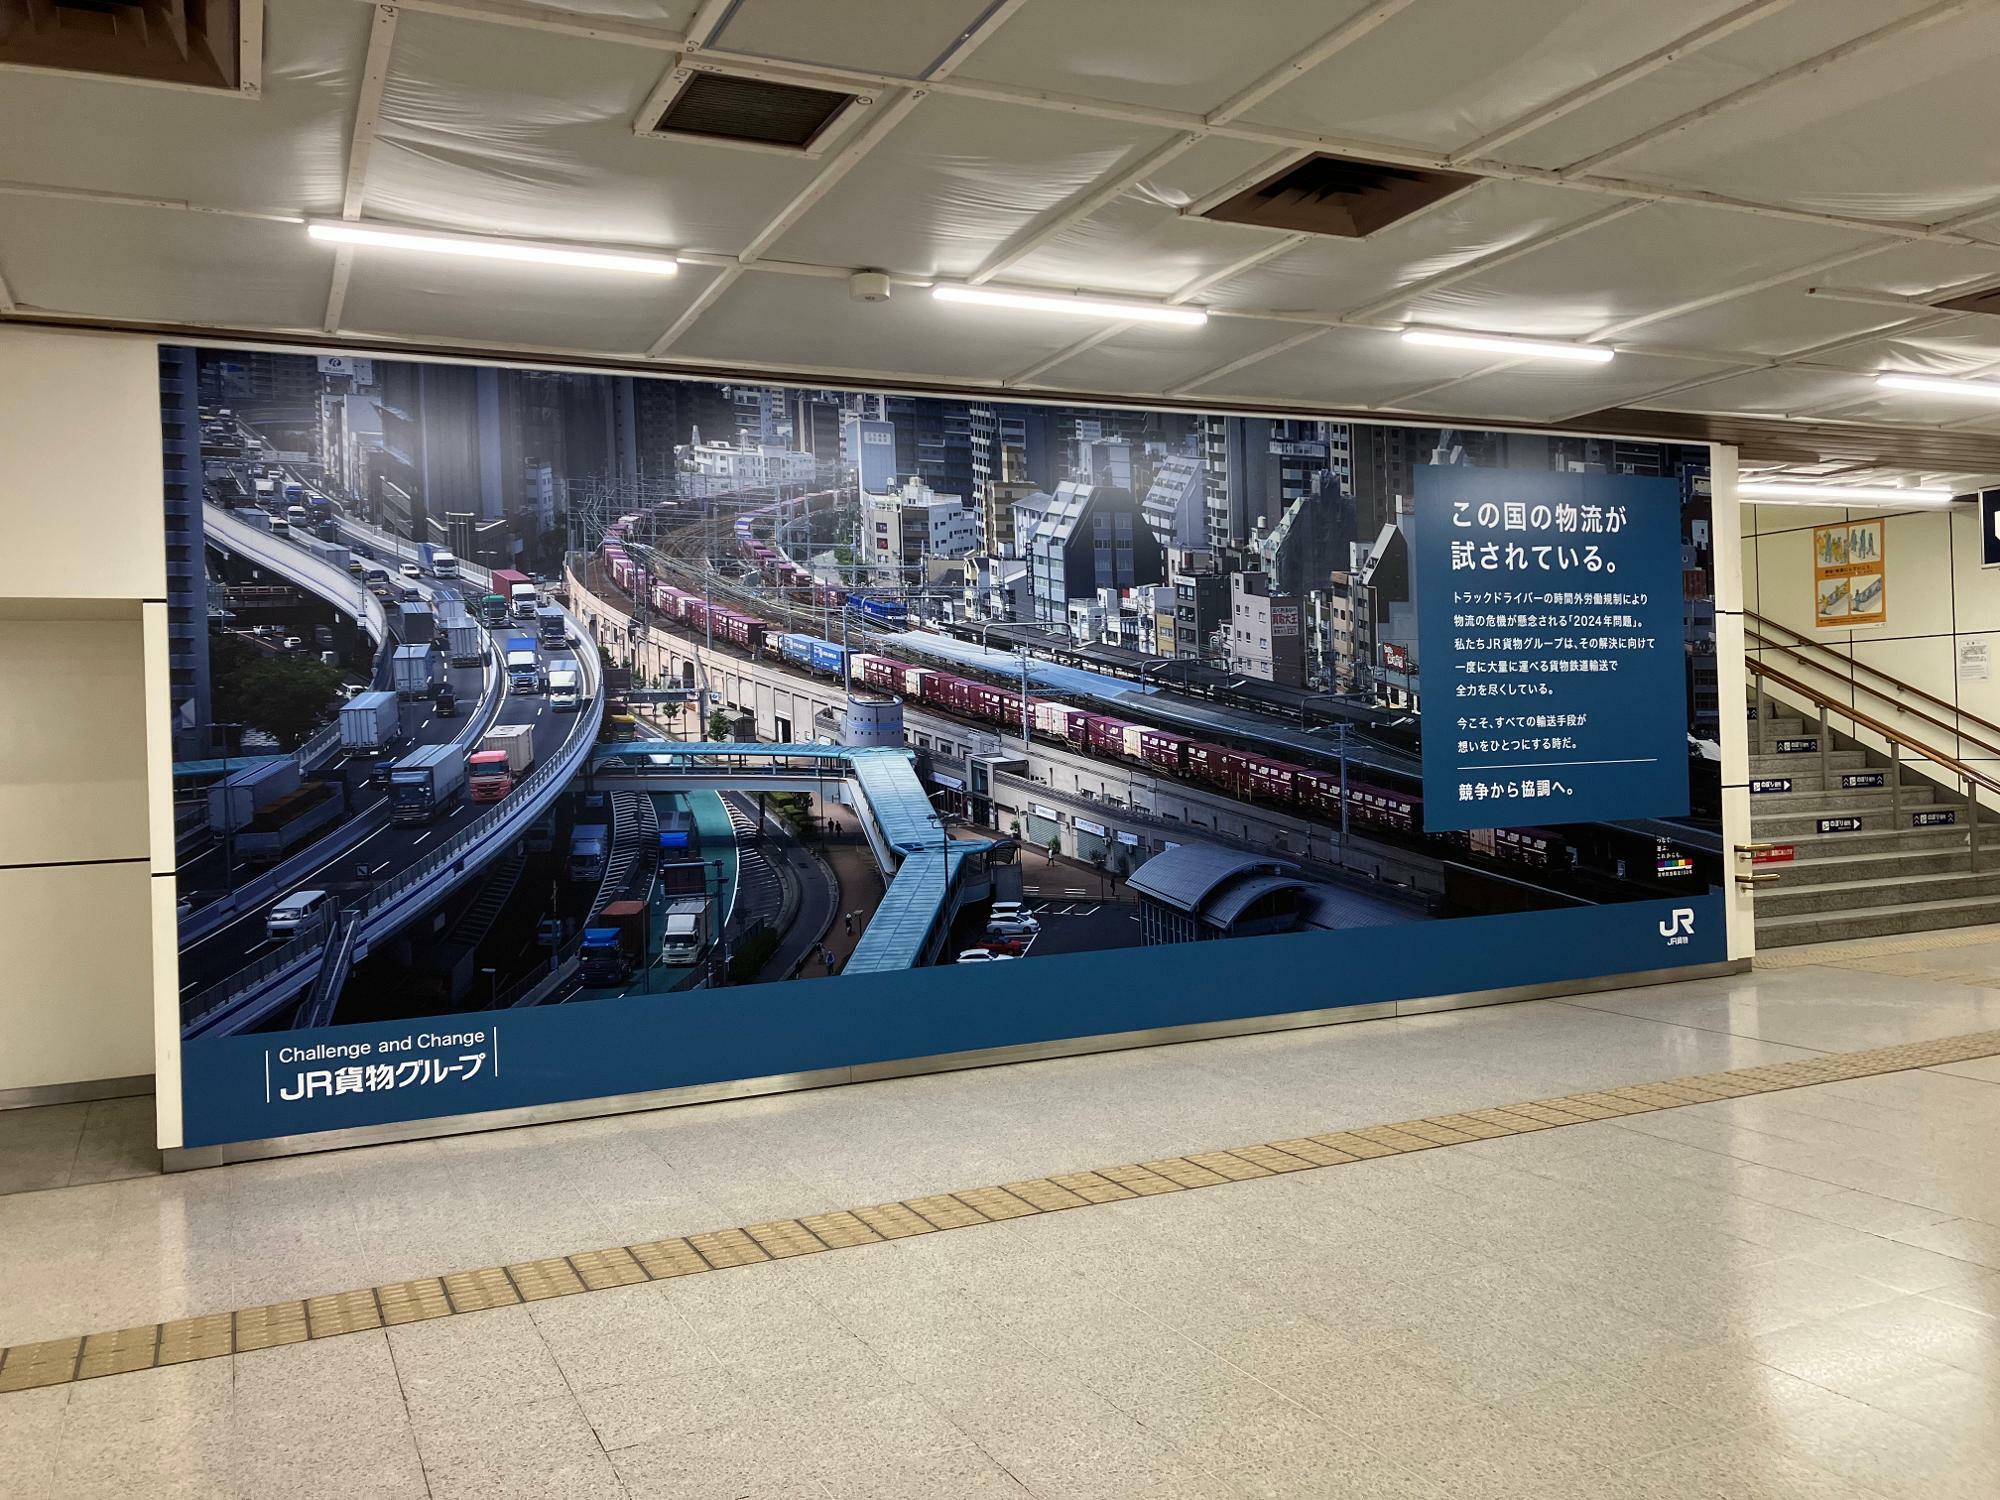 札幌駅にはJR貨物の巨大な意見広告が掲示されていた（筆者撮影）